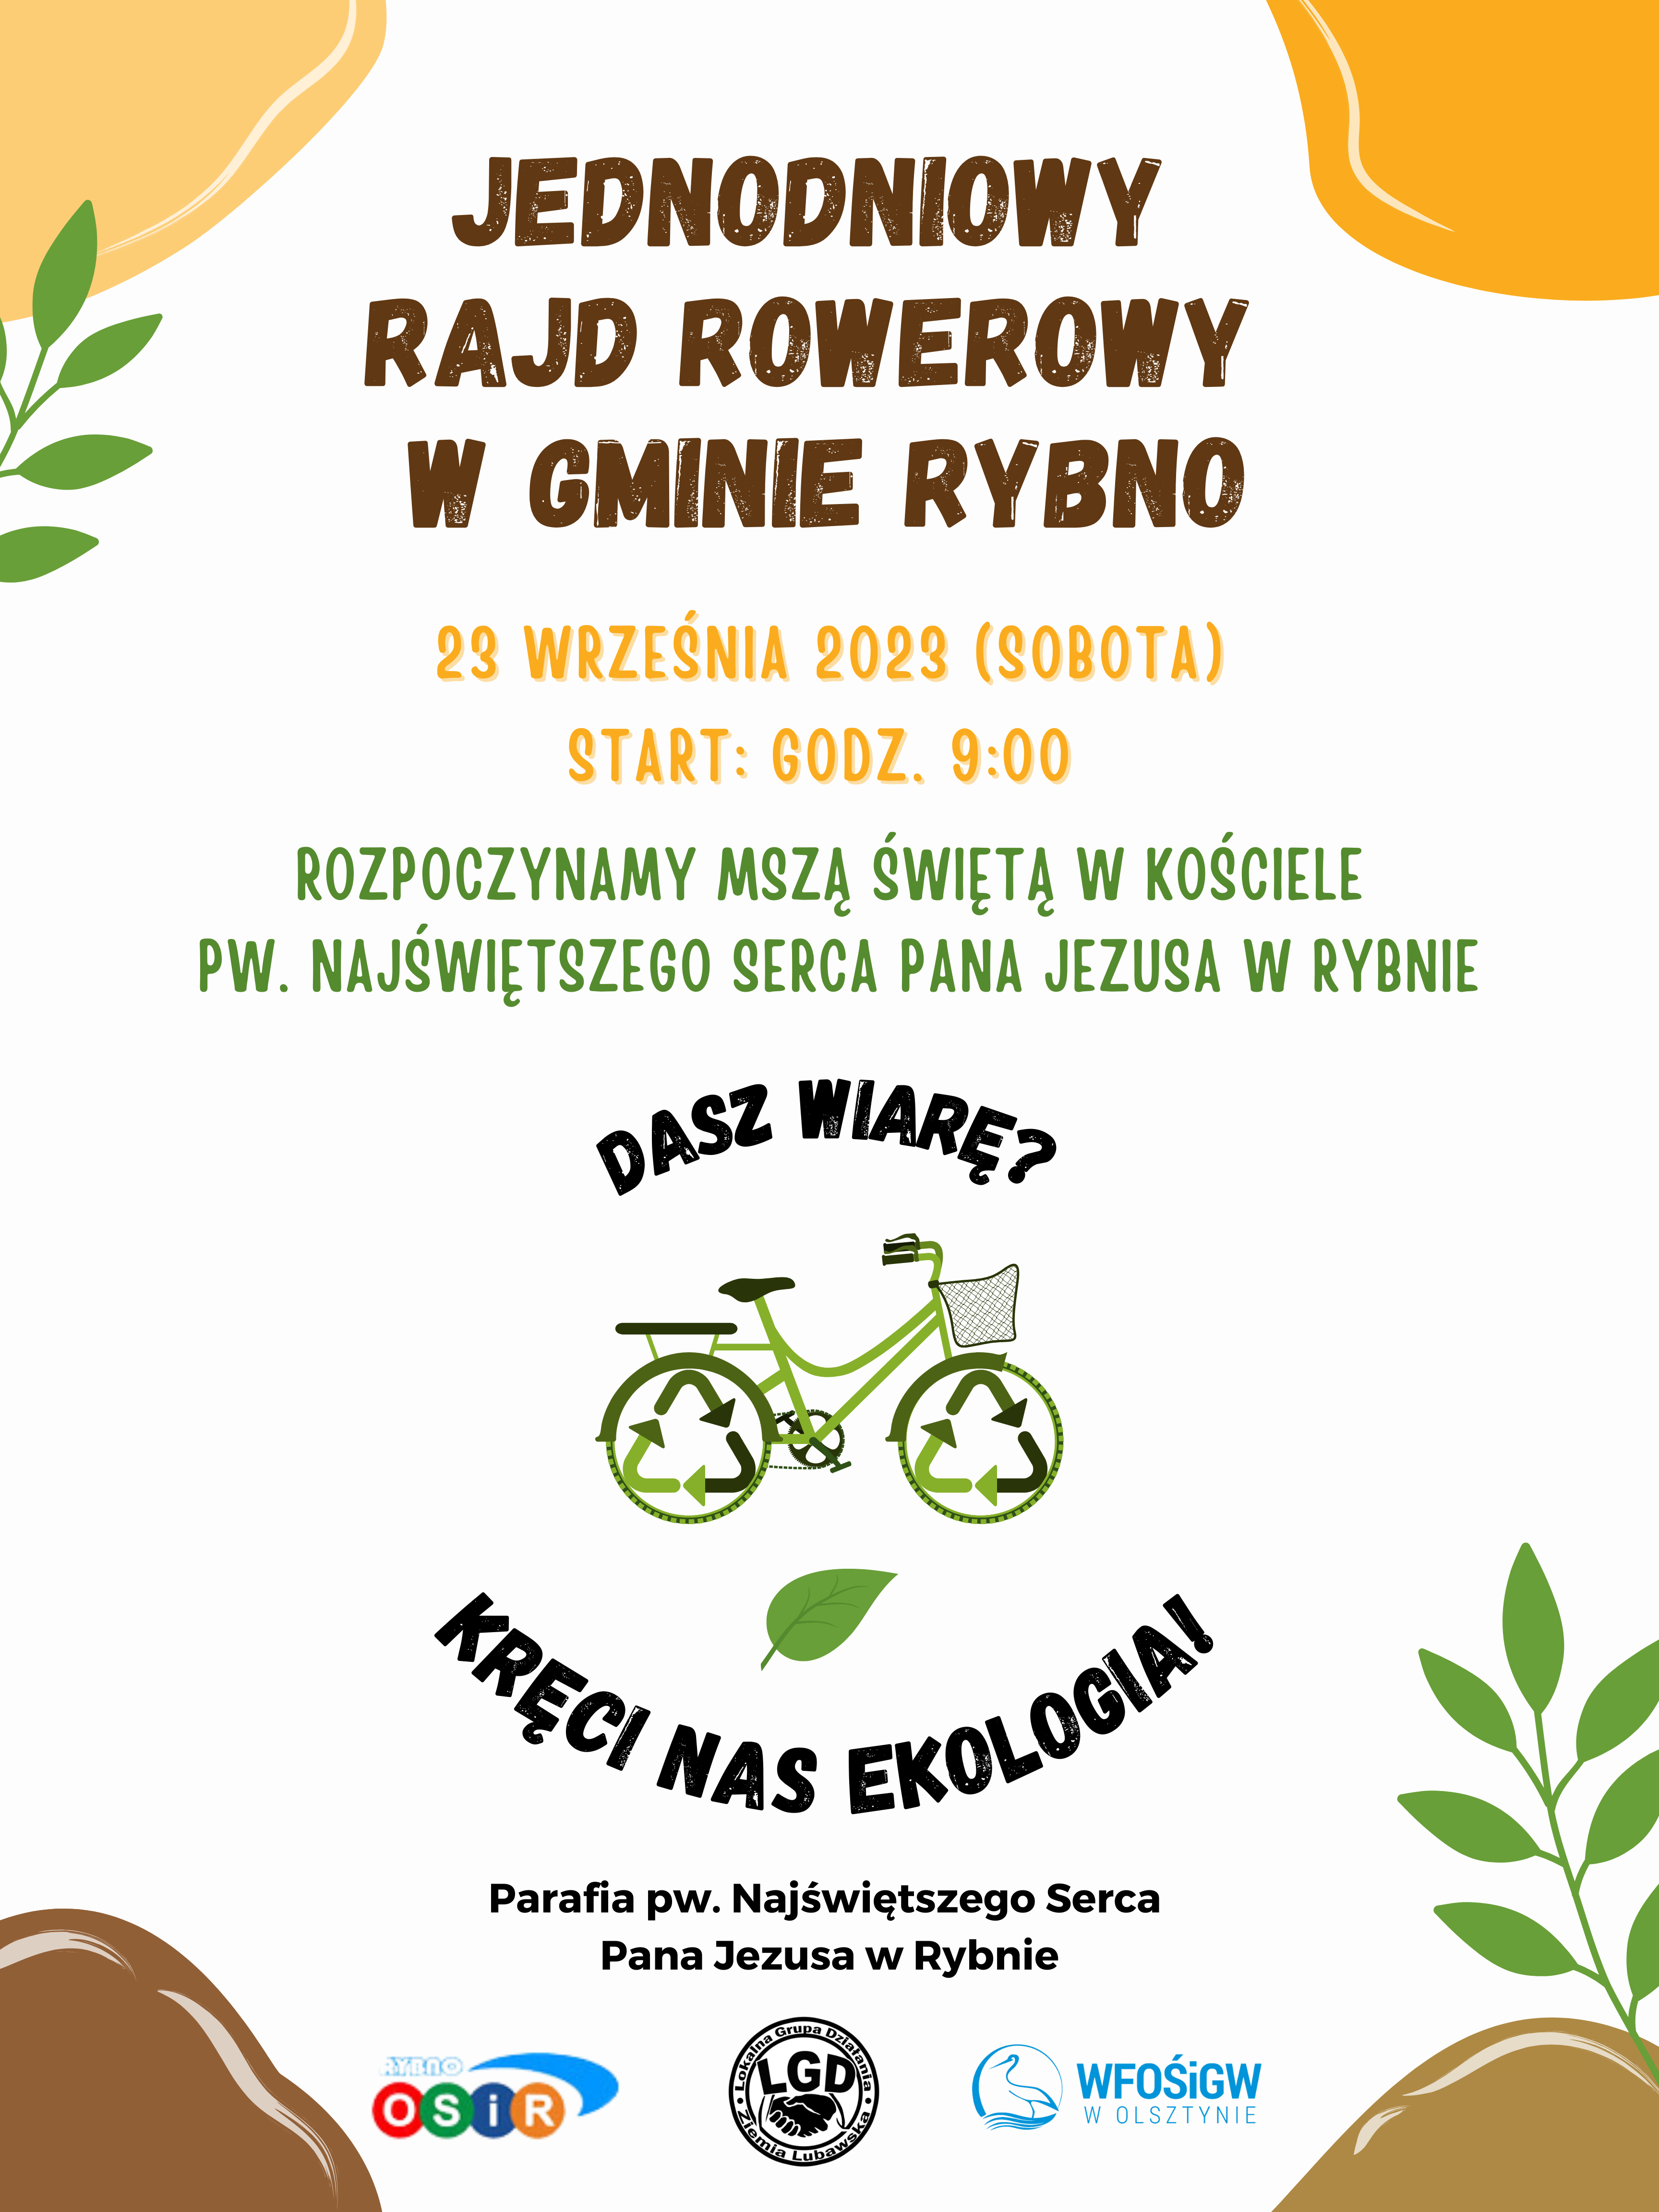 Jednodniowy Rajd Rowerowy w gminie Rybno